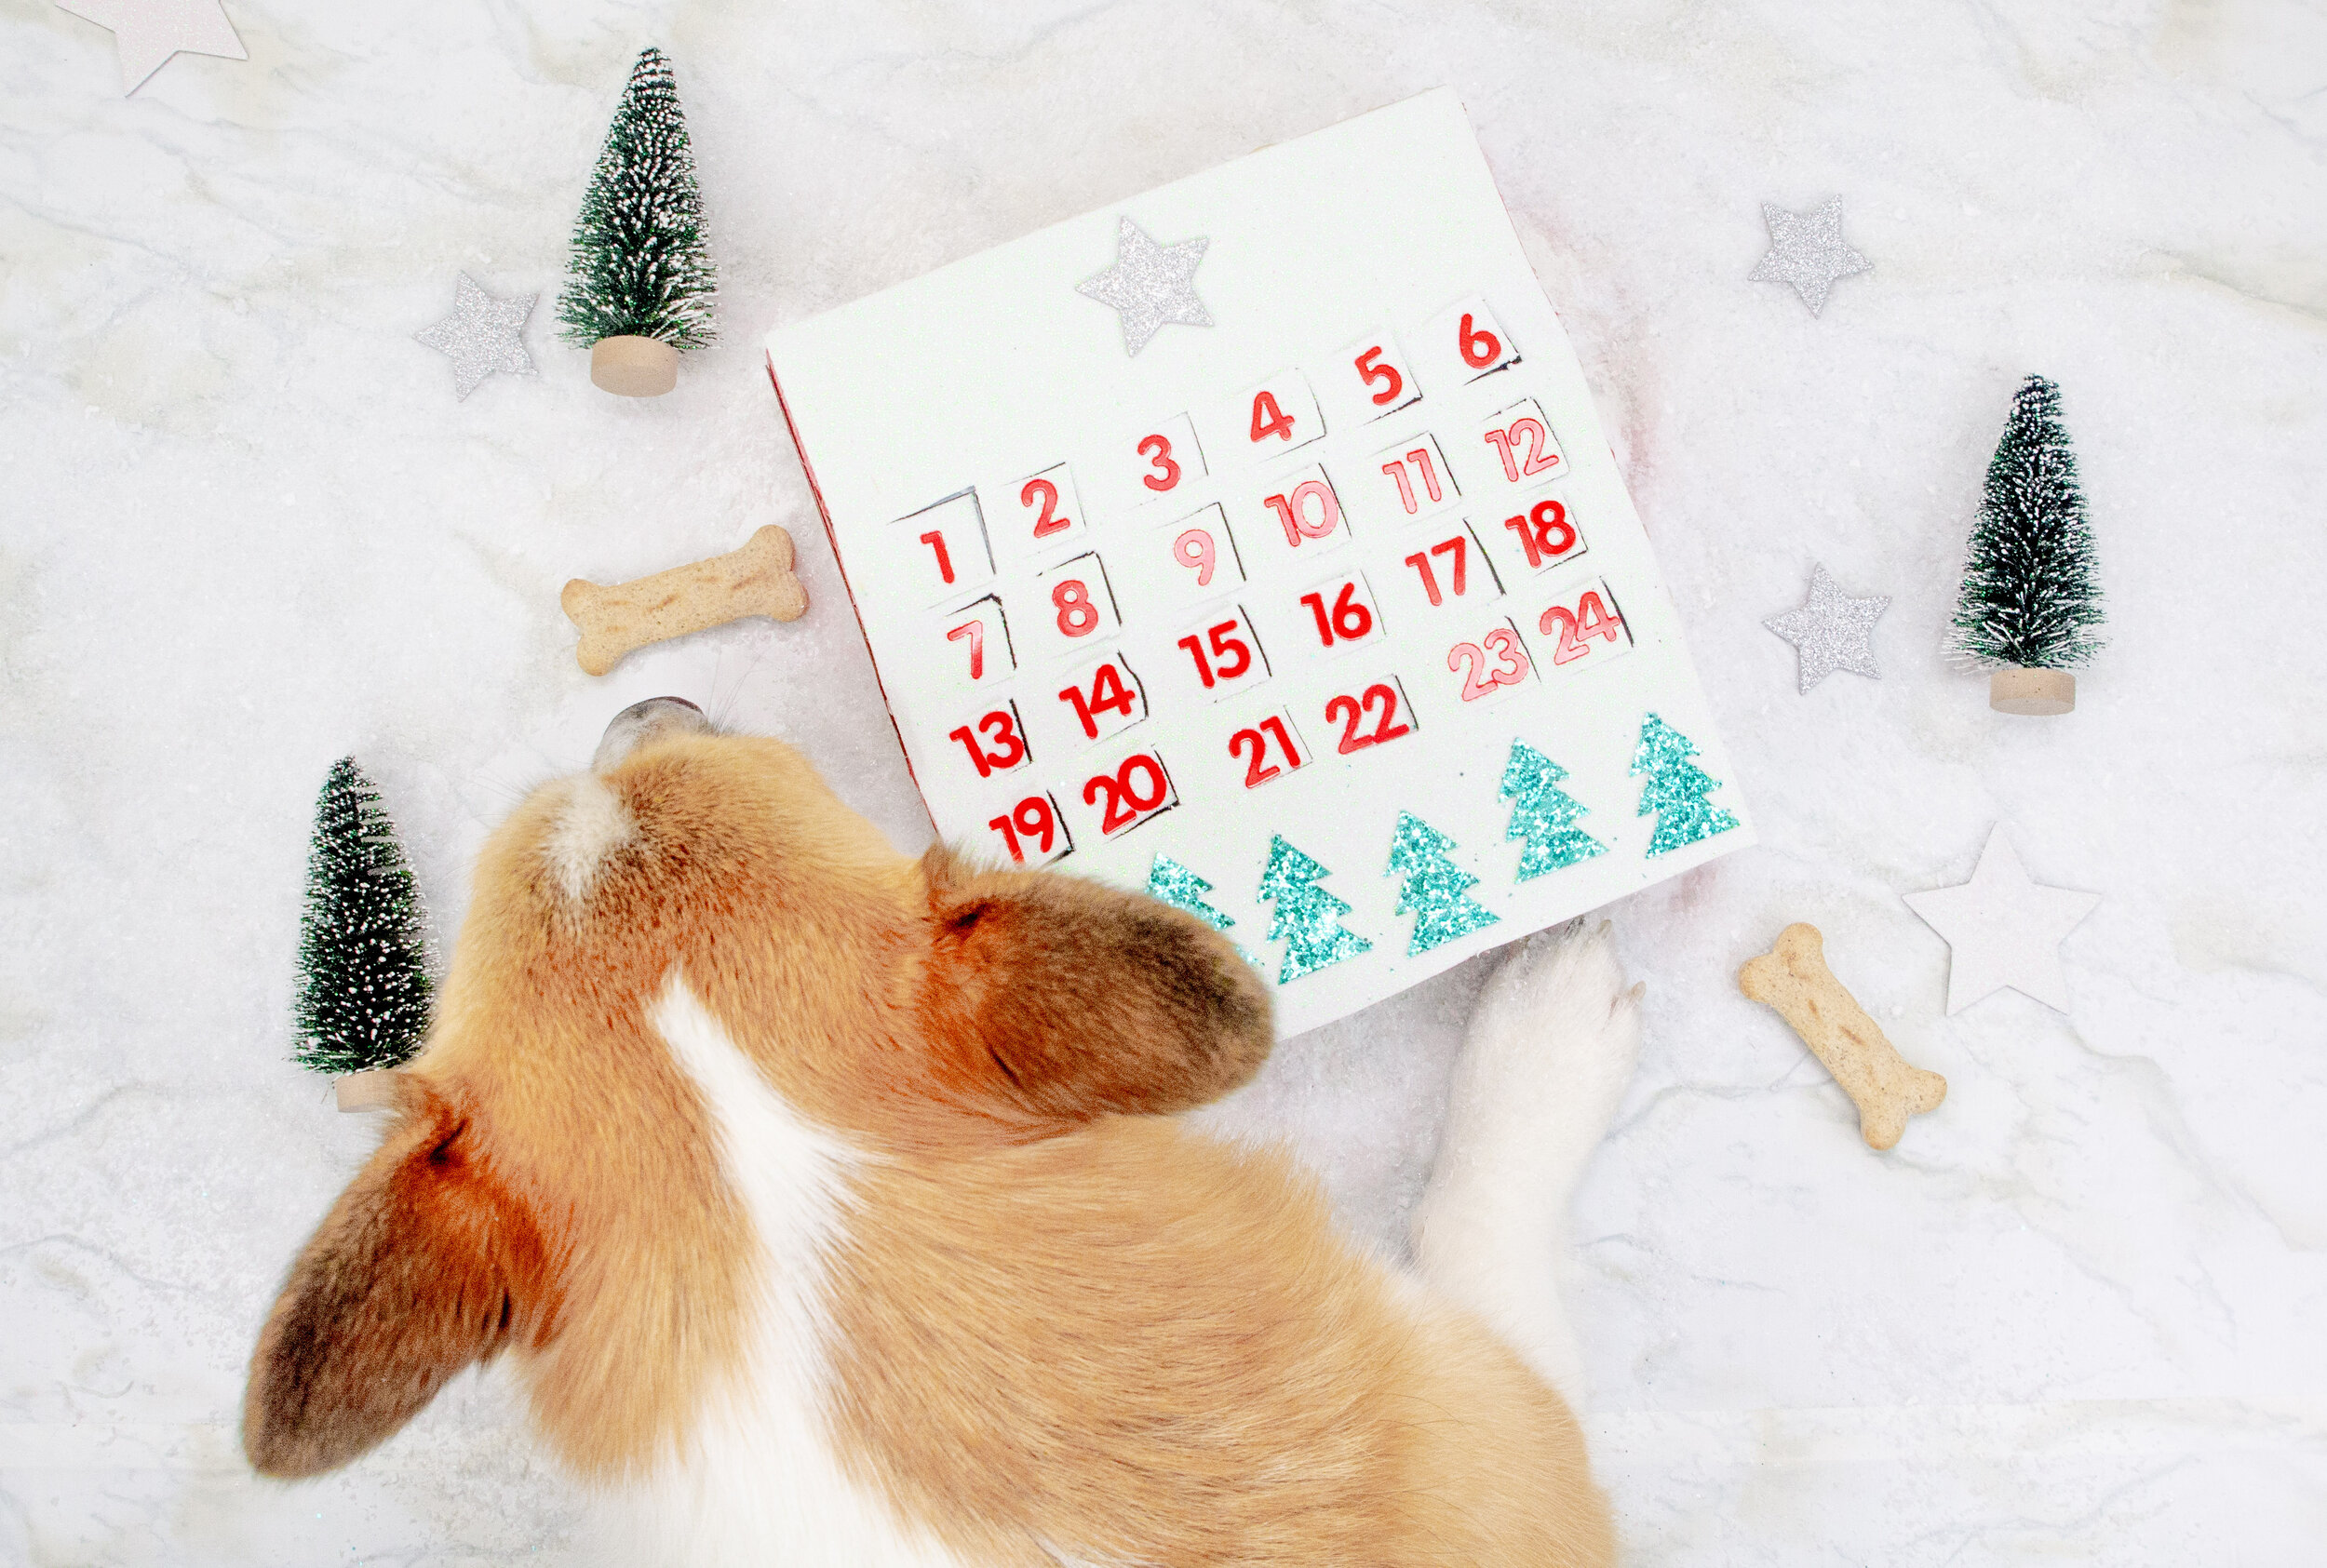 https://images.squarespace-cdn.com/content/v1/58909dda6b8f5ba2eda09210/1606759694428-AC3UI28GMWI5GHH3Z9EN/DIY+Dog+Advent+Calendar+on+The+Dapple%3A+Homemade+Dog+Treat+Advent+Calendar+DIY